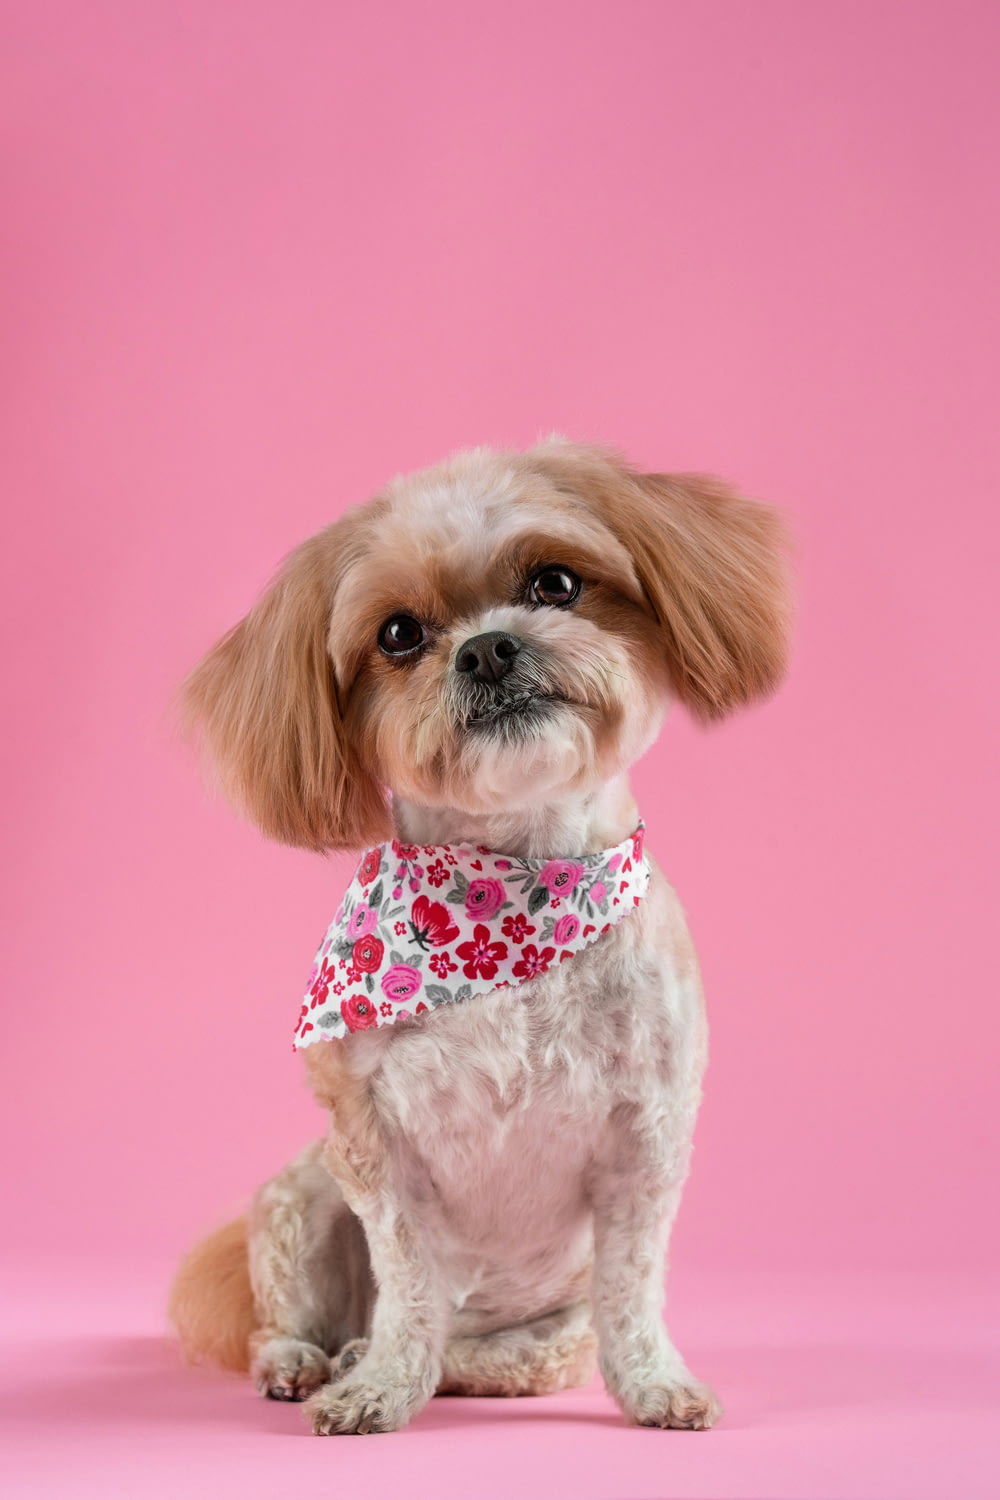 a small dog wearing a bandana on a pink background